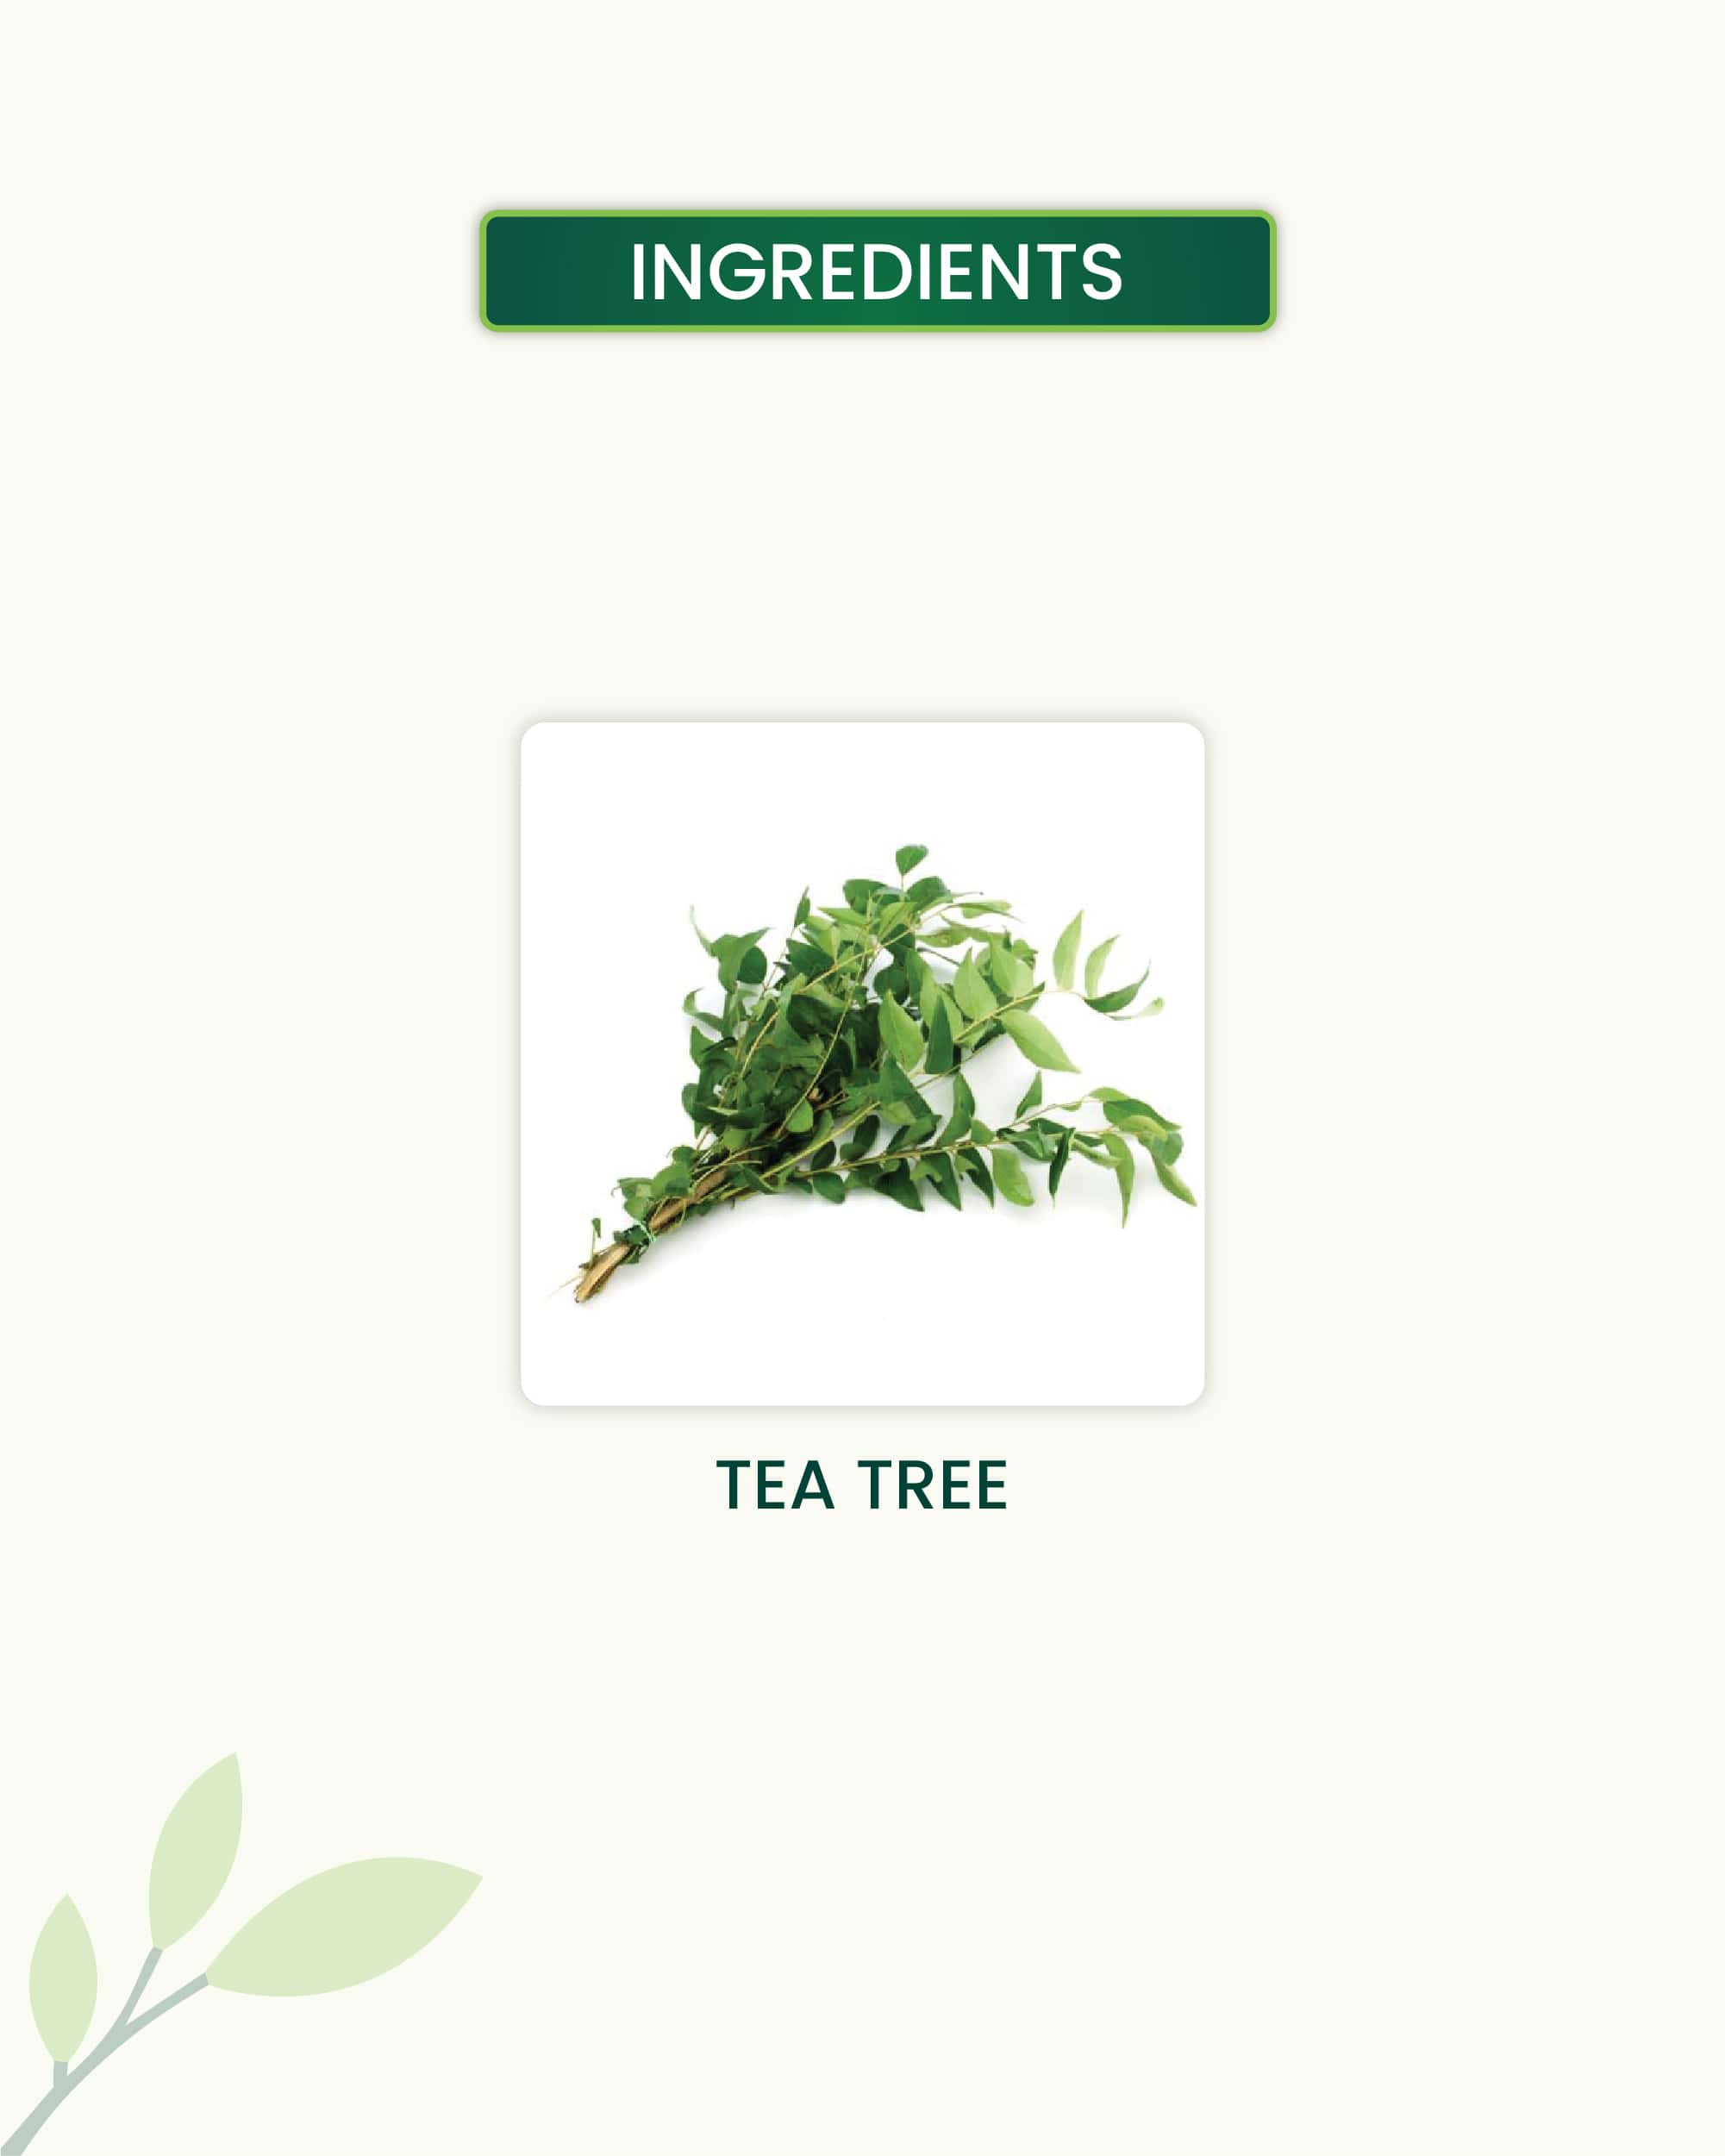 Tea Tree Essential Oil Key Ingredients